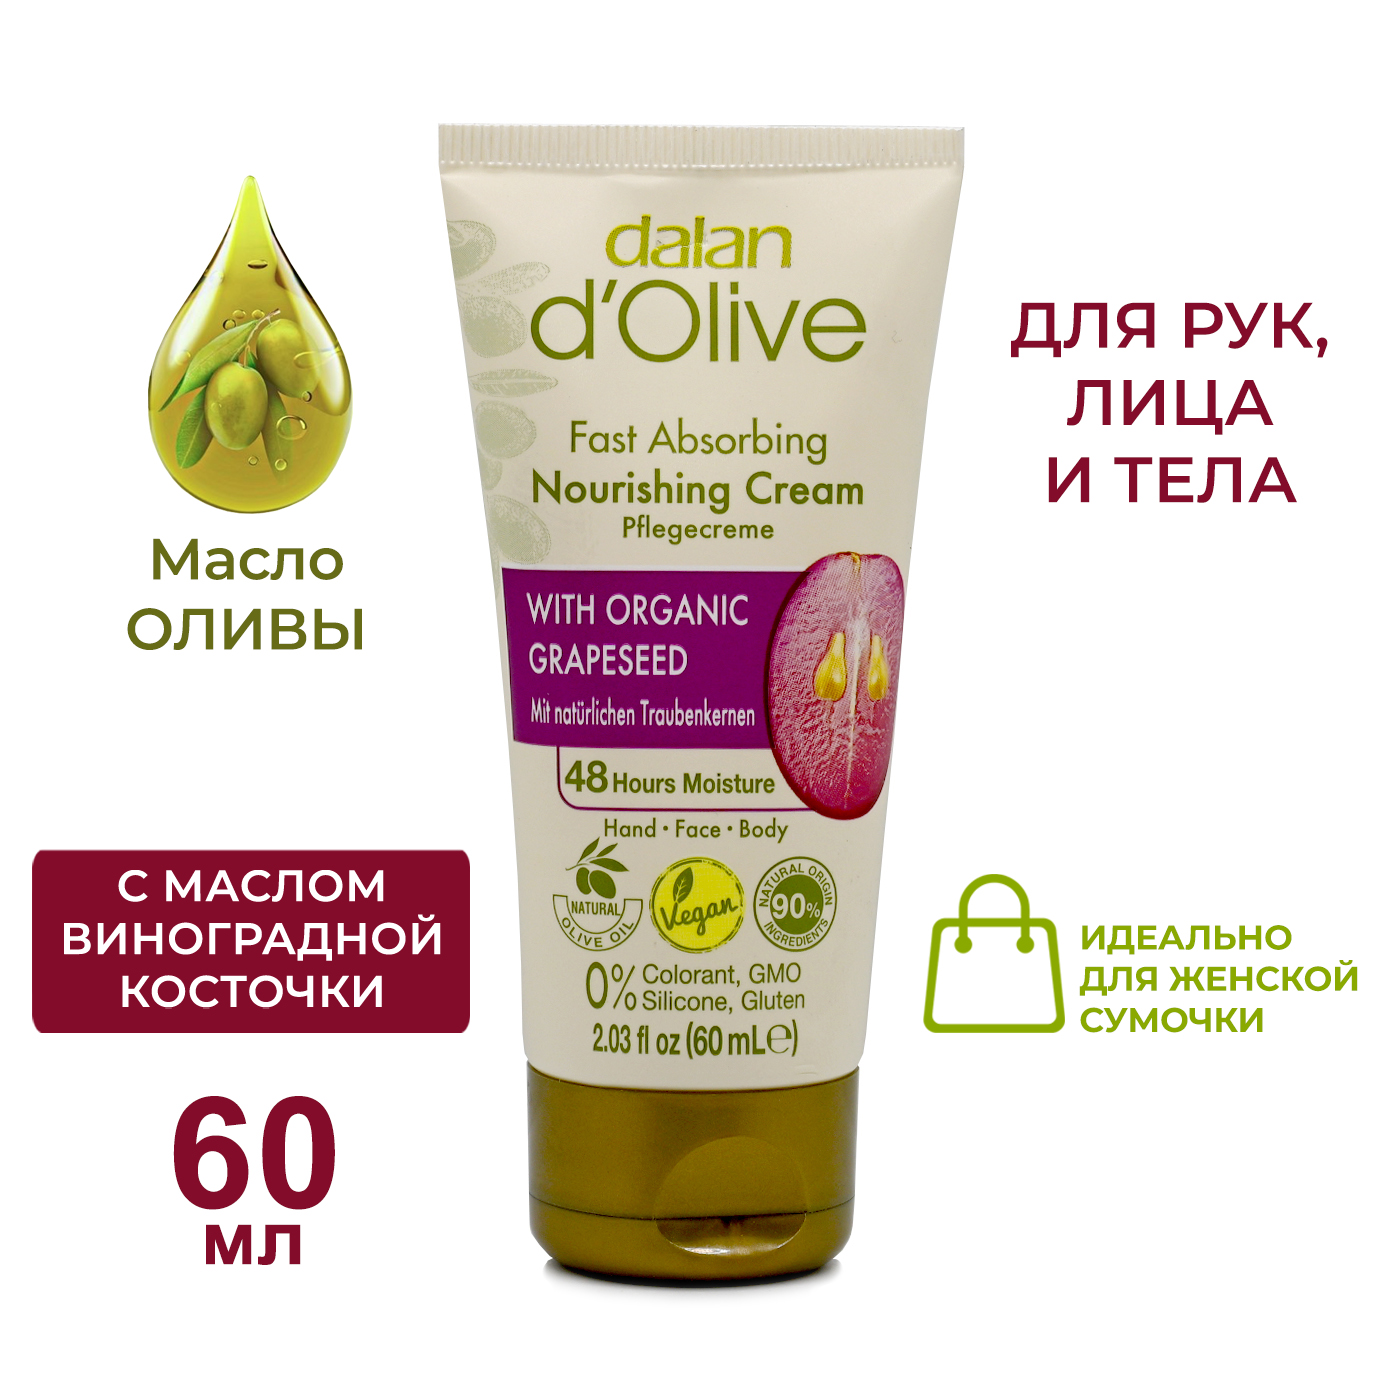 Крем для рук и тела Dalan D'Olive Питательный с маслом виноградных косточек 60 мл dalan мыло массажное и антицеллюлитное d olive 150